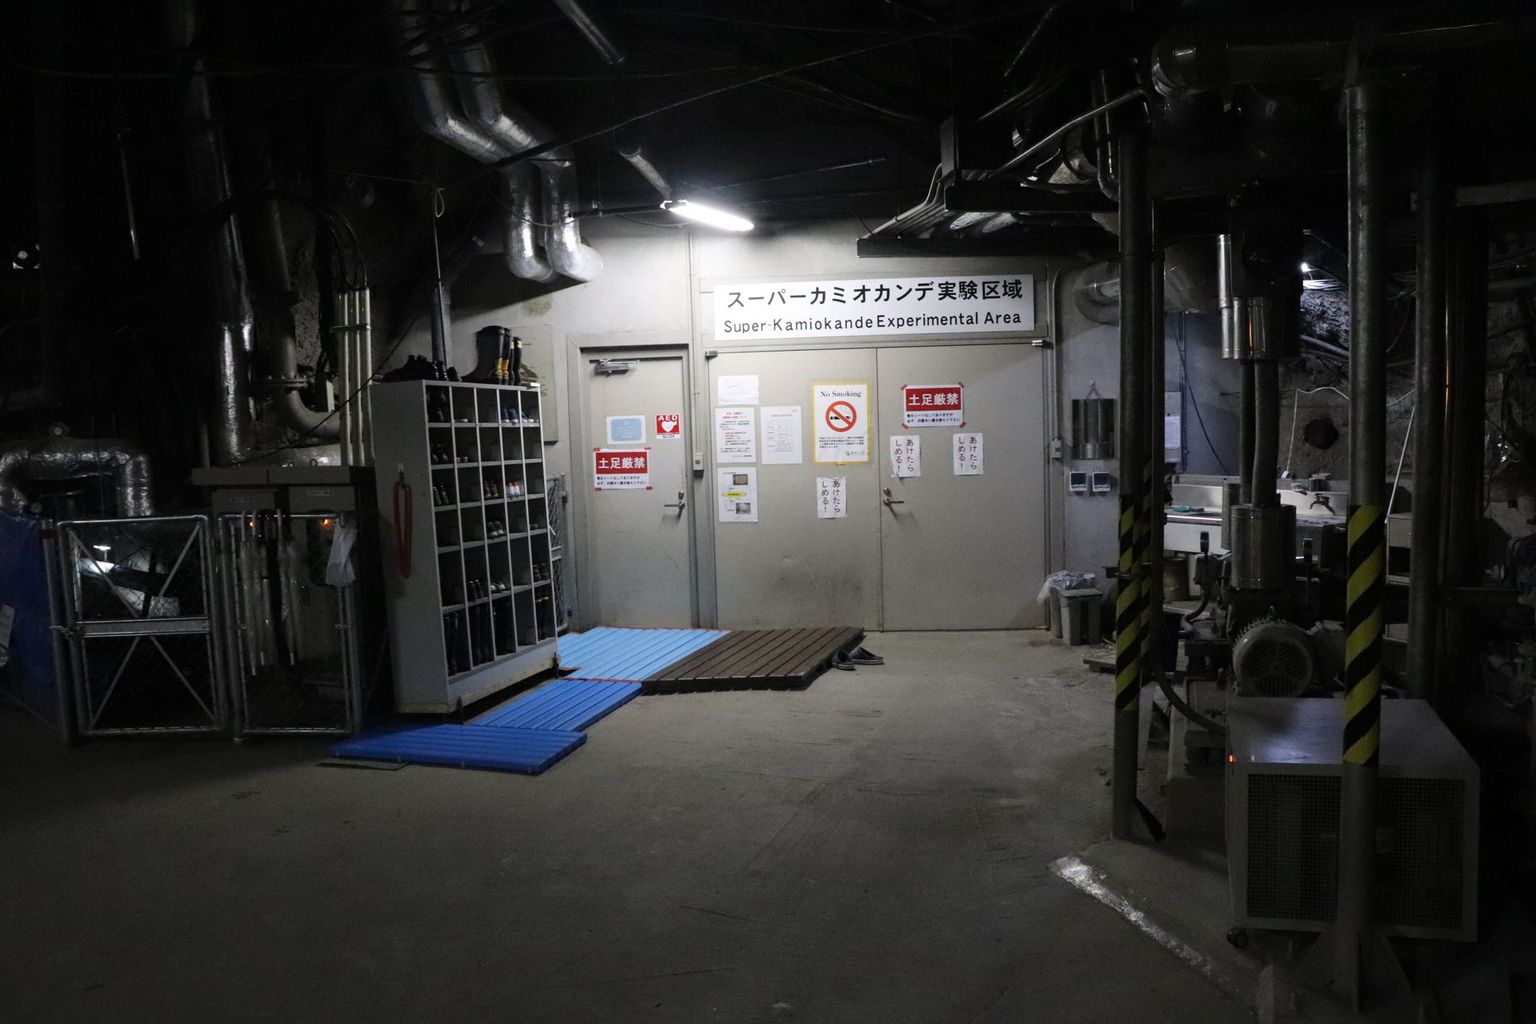 Der Eingang zum Super-Kamiokande-Detektor. Wie immer, wenn man in Japan einen Raum betritt, heisst es: Schuhe bitte ausziehen (und im Regal links verstauen). Foto: B. Vogel